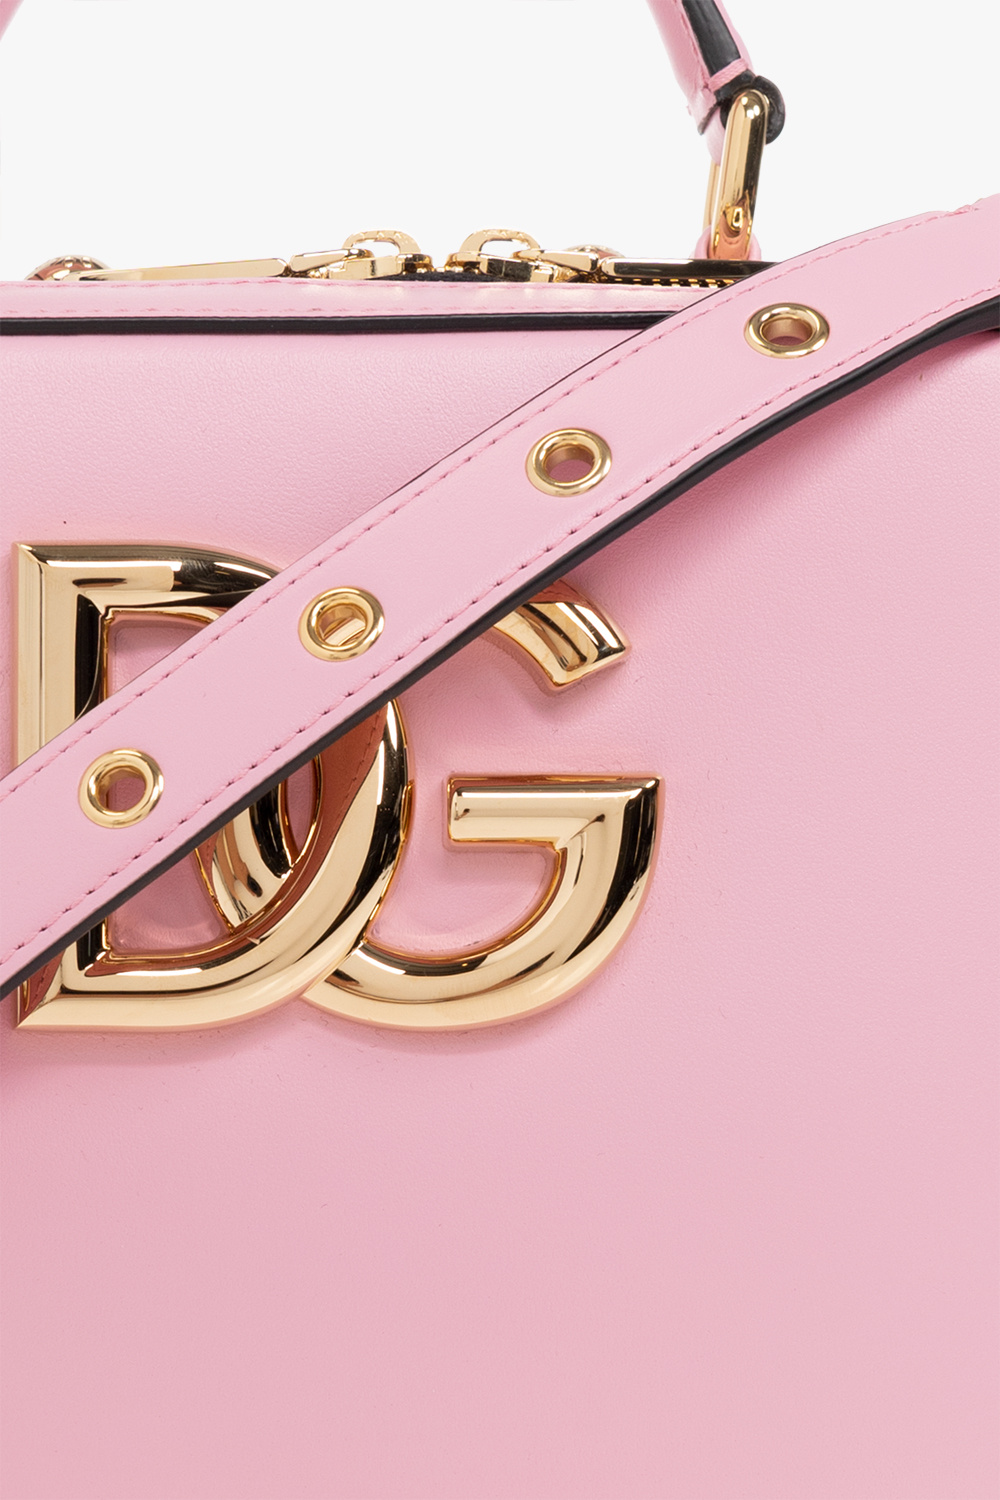 dolce Rosa & Gabbana ‘3.5’ shoulder bag